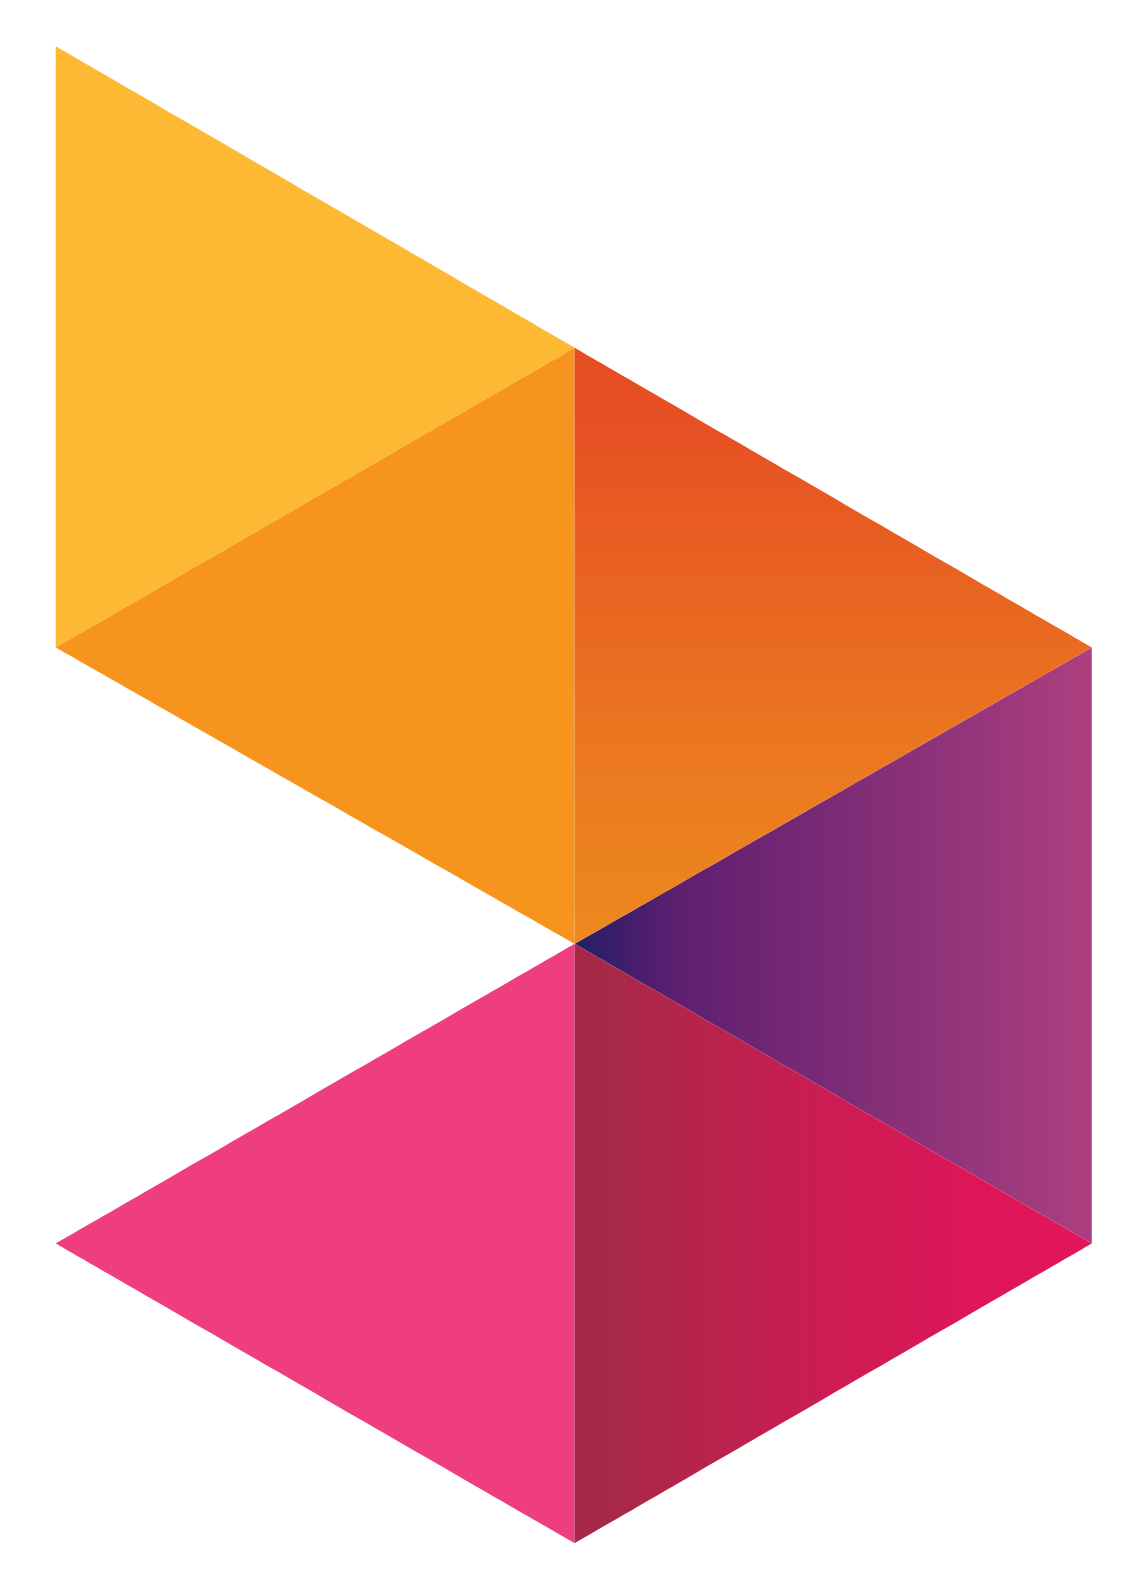 Axiata Group logo pour fonds sombres (PNG transparent)